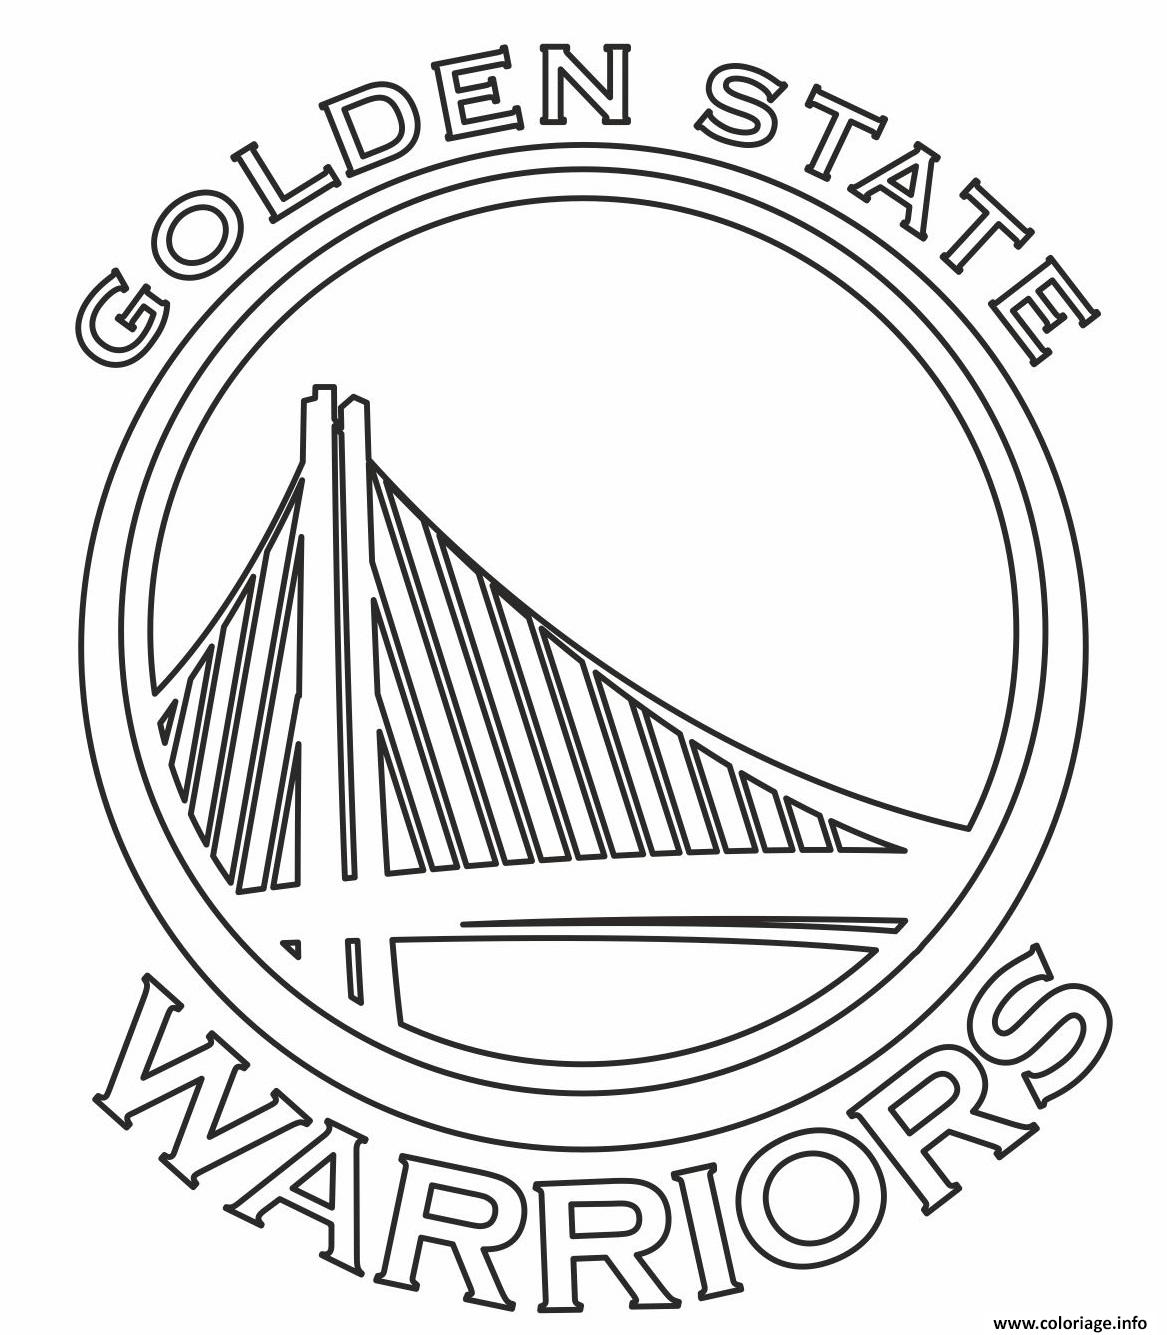 Coloriage Nba Teams Logo Golden State Warriors Dessin Basketball Imprimer